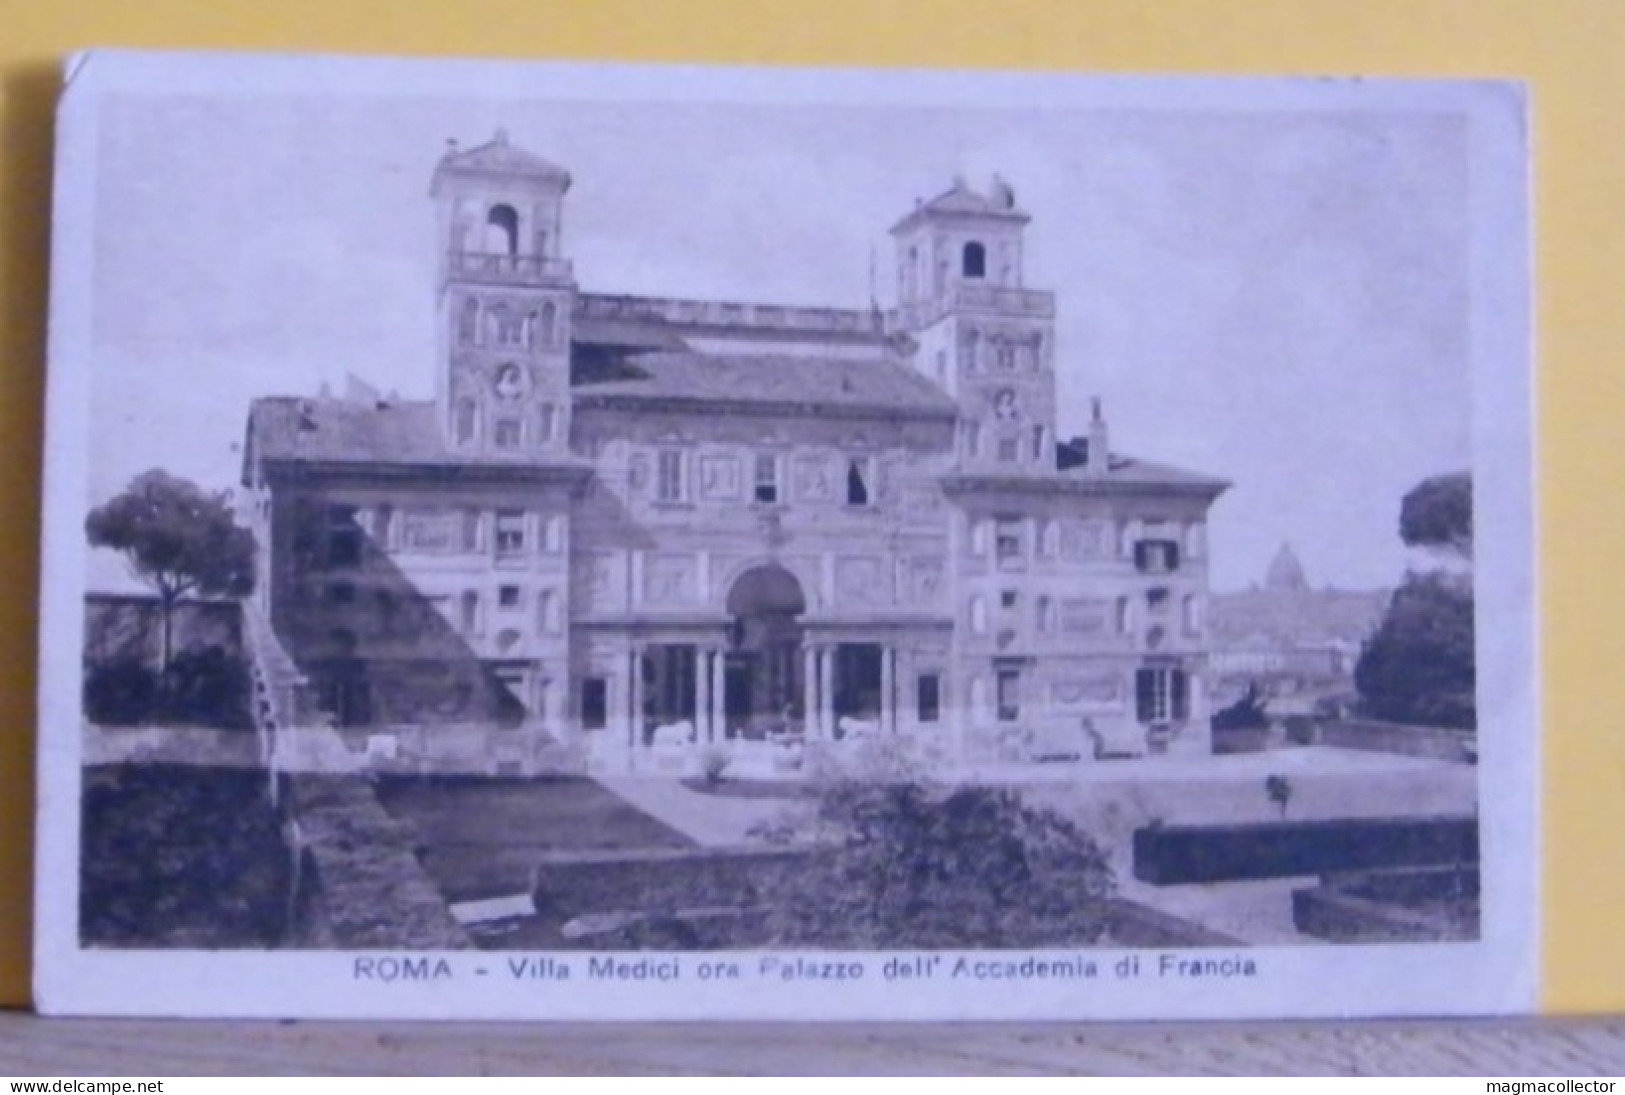 (ROM3) ROMA - VILLA MEDICI ORA PALAZZO DELL' ACCADEMIA FRANCIA - VIAGGIATA 1919 - Andere Monumente & Gebäude